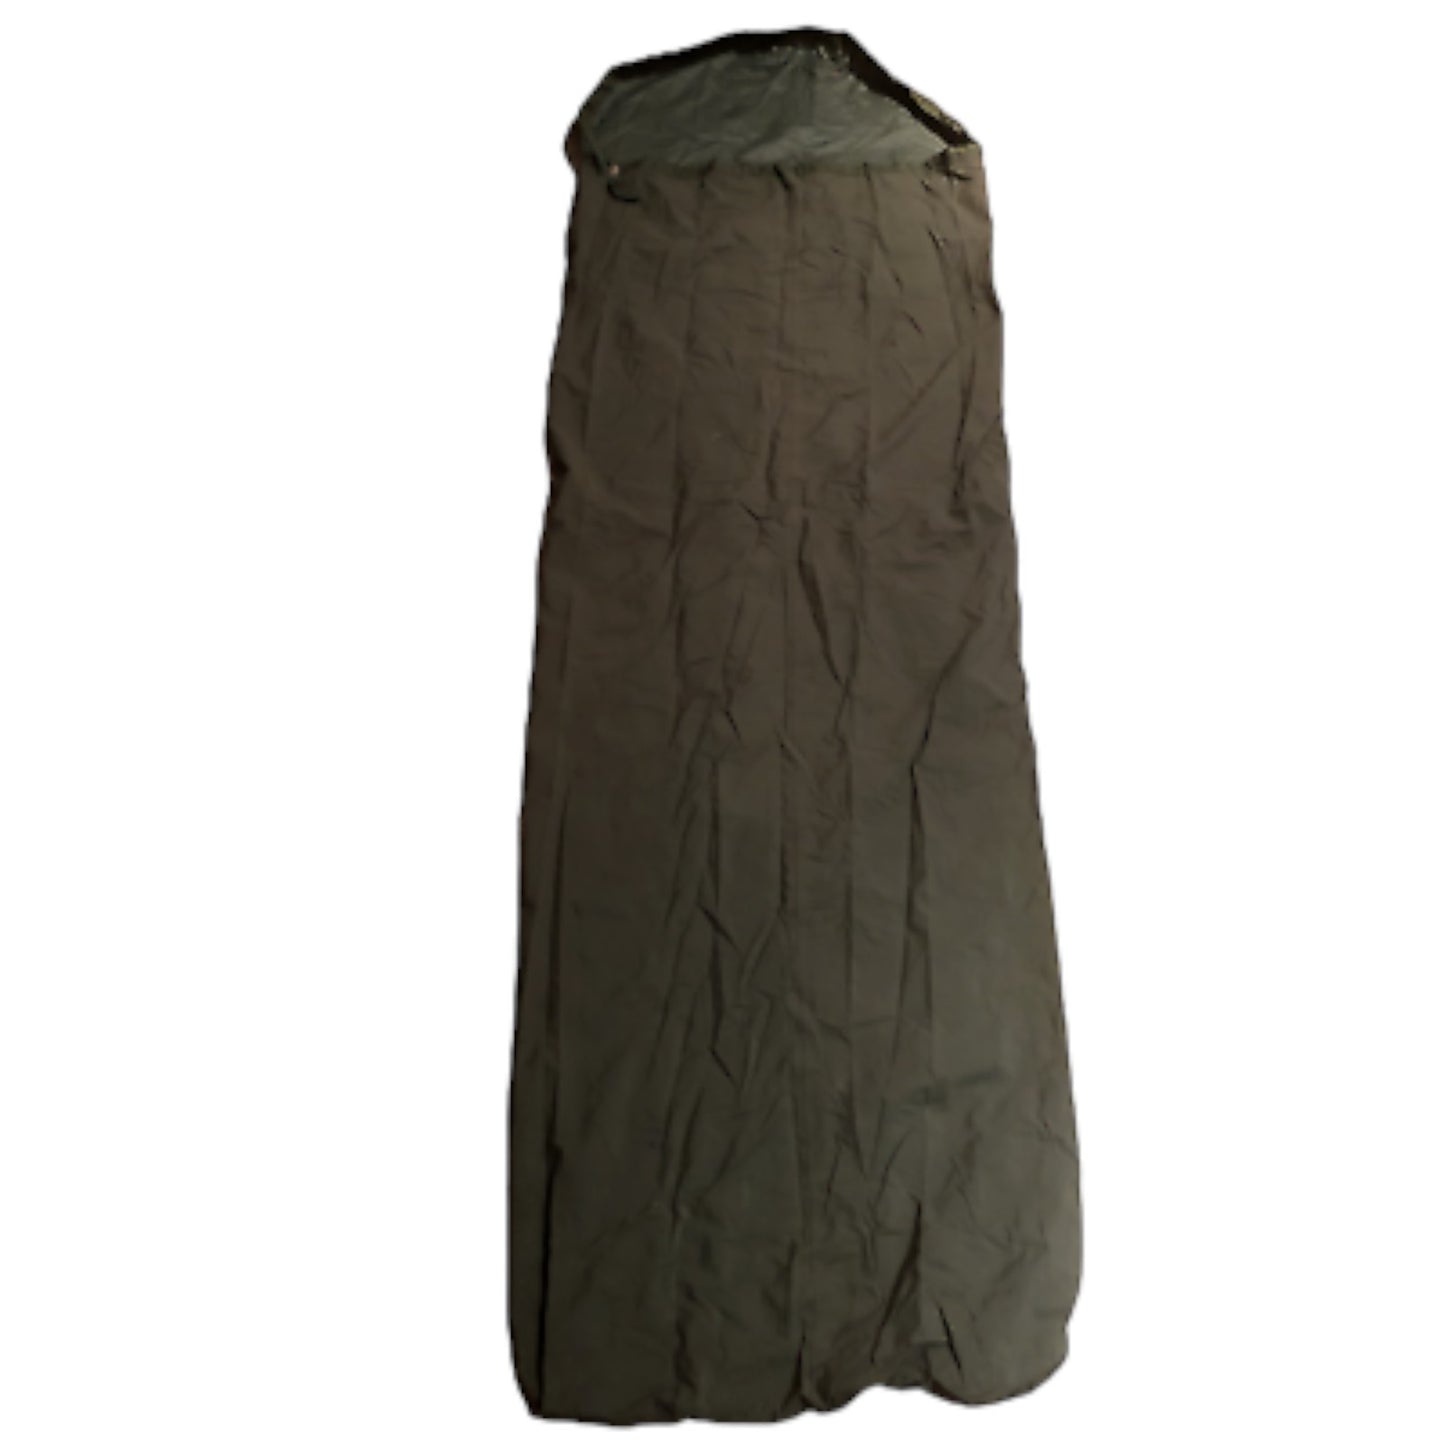 British army green bivvy sleeping bag cover